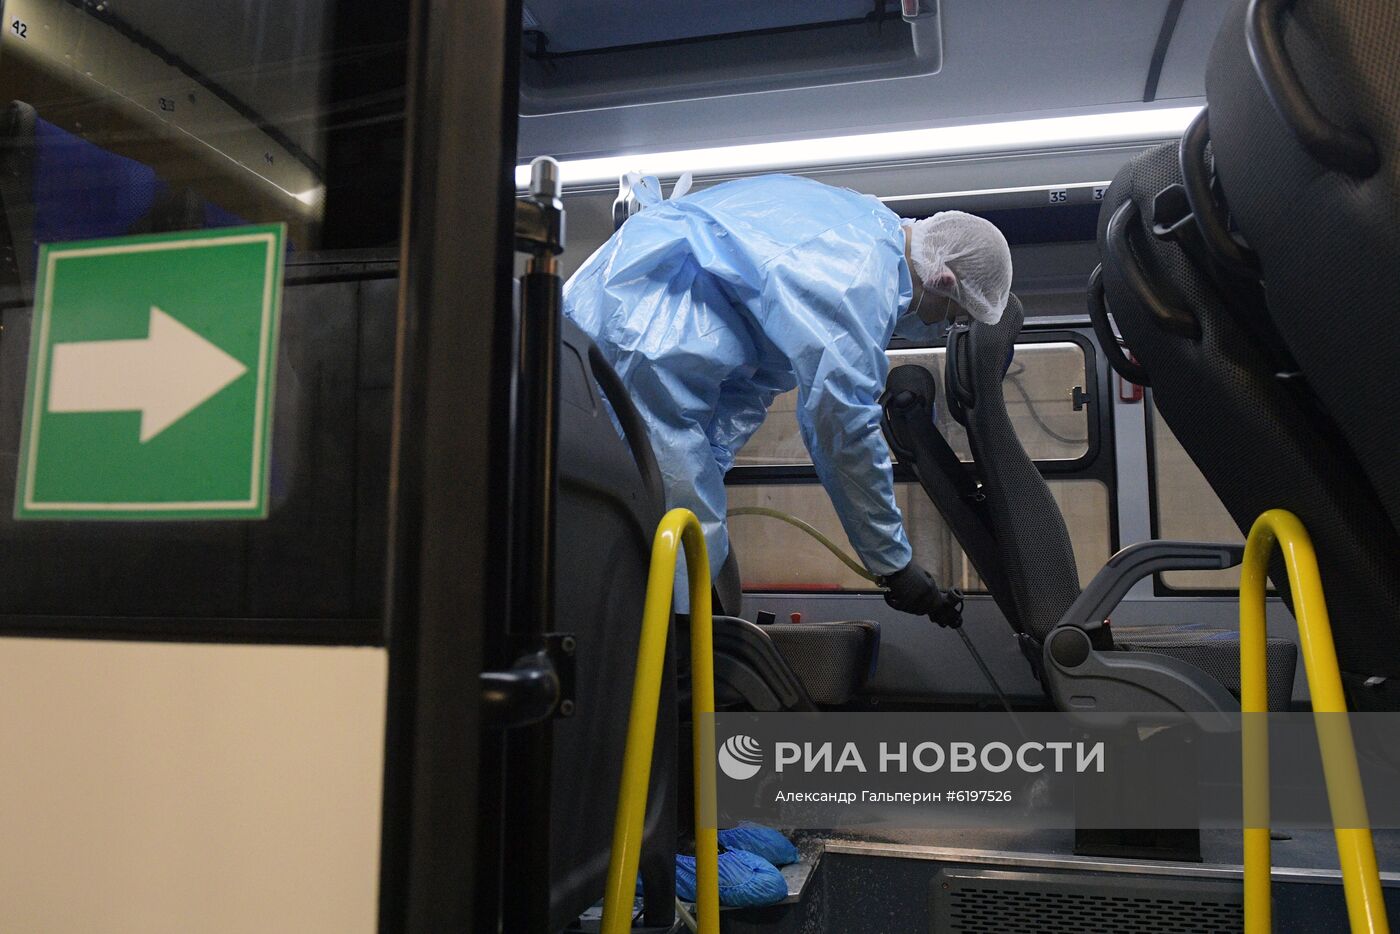 Санитарная обработка общественного транспорта в Санкт-Петербурге